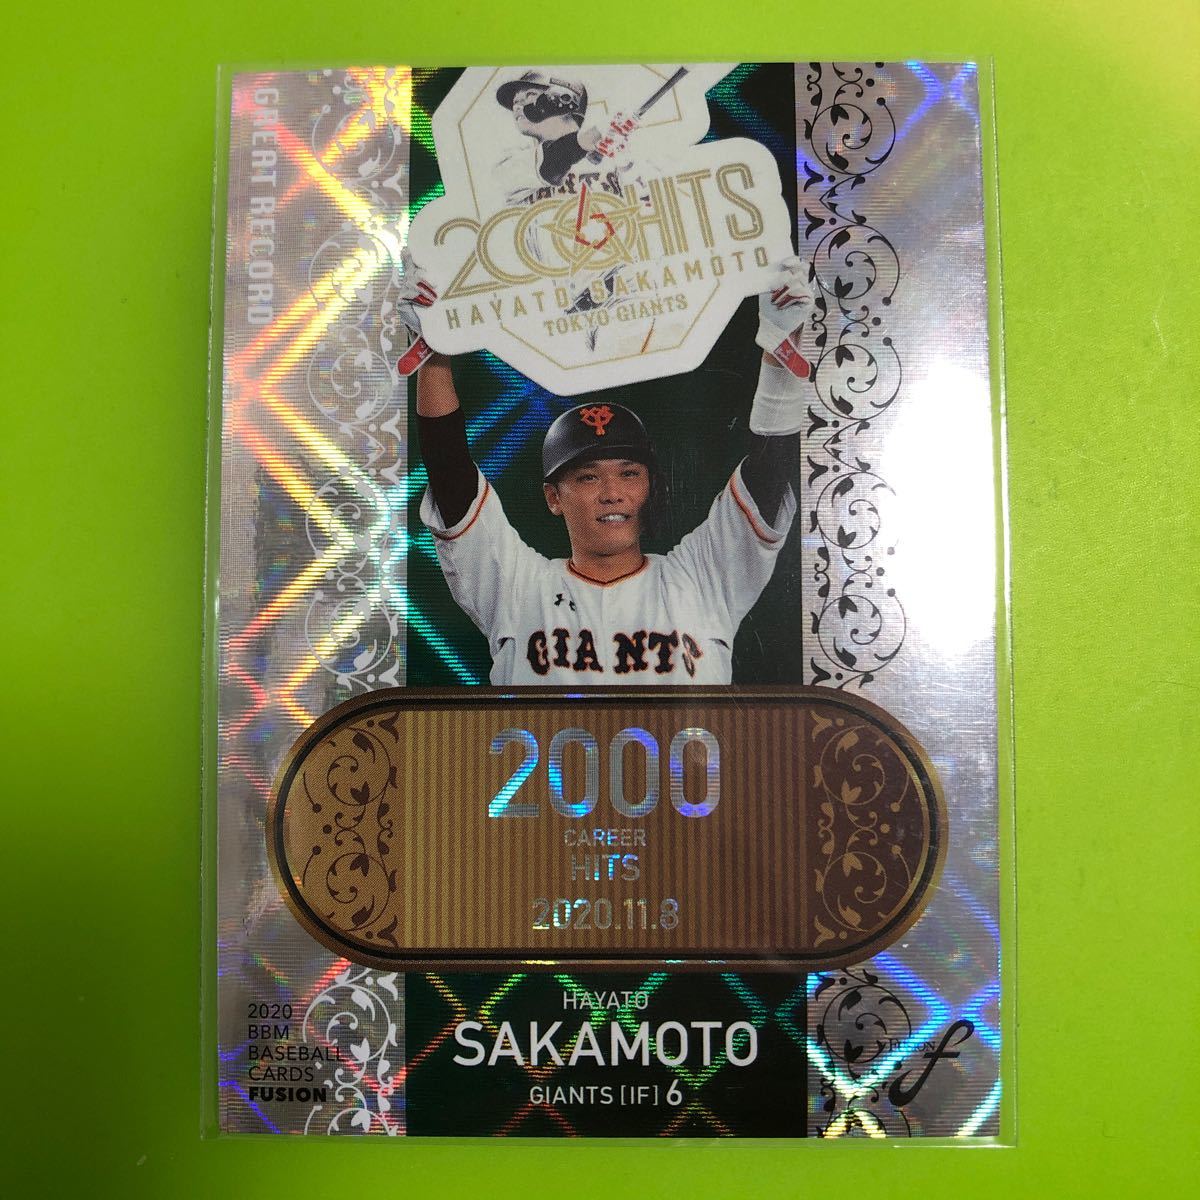 坂本勇人 インサートカード 2000安打達成 BBM 2020 フュージョン グレイトレコード 巨人 読売ジャイアンツの画像1